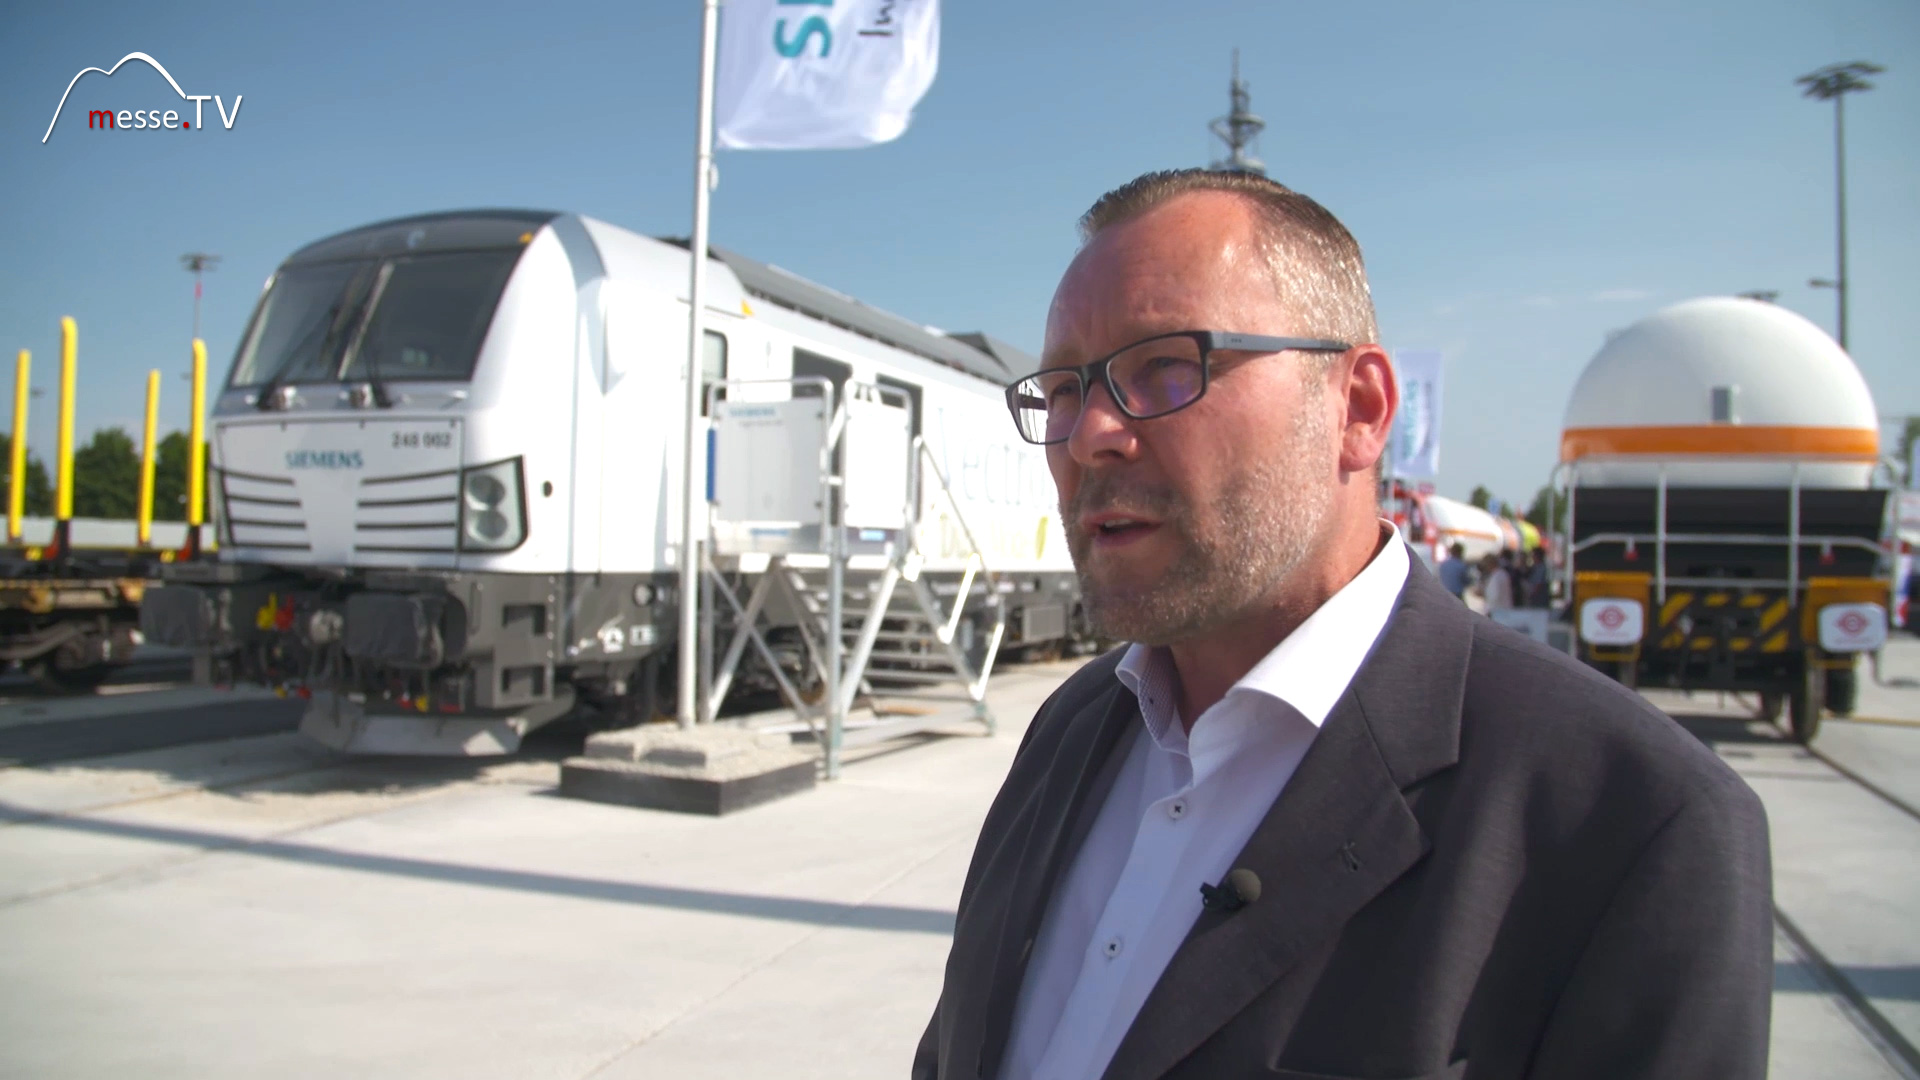 Jochen Emde Siemens Interview MesseTV transport logistic Munich Trade Fair